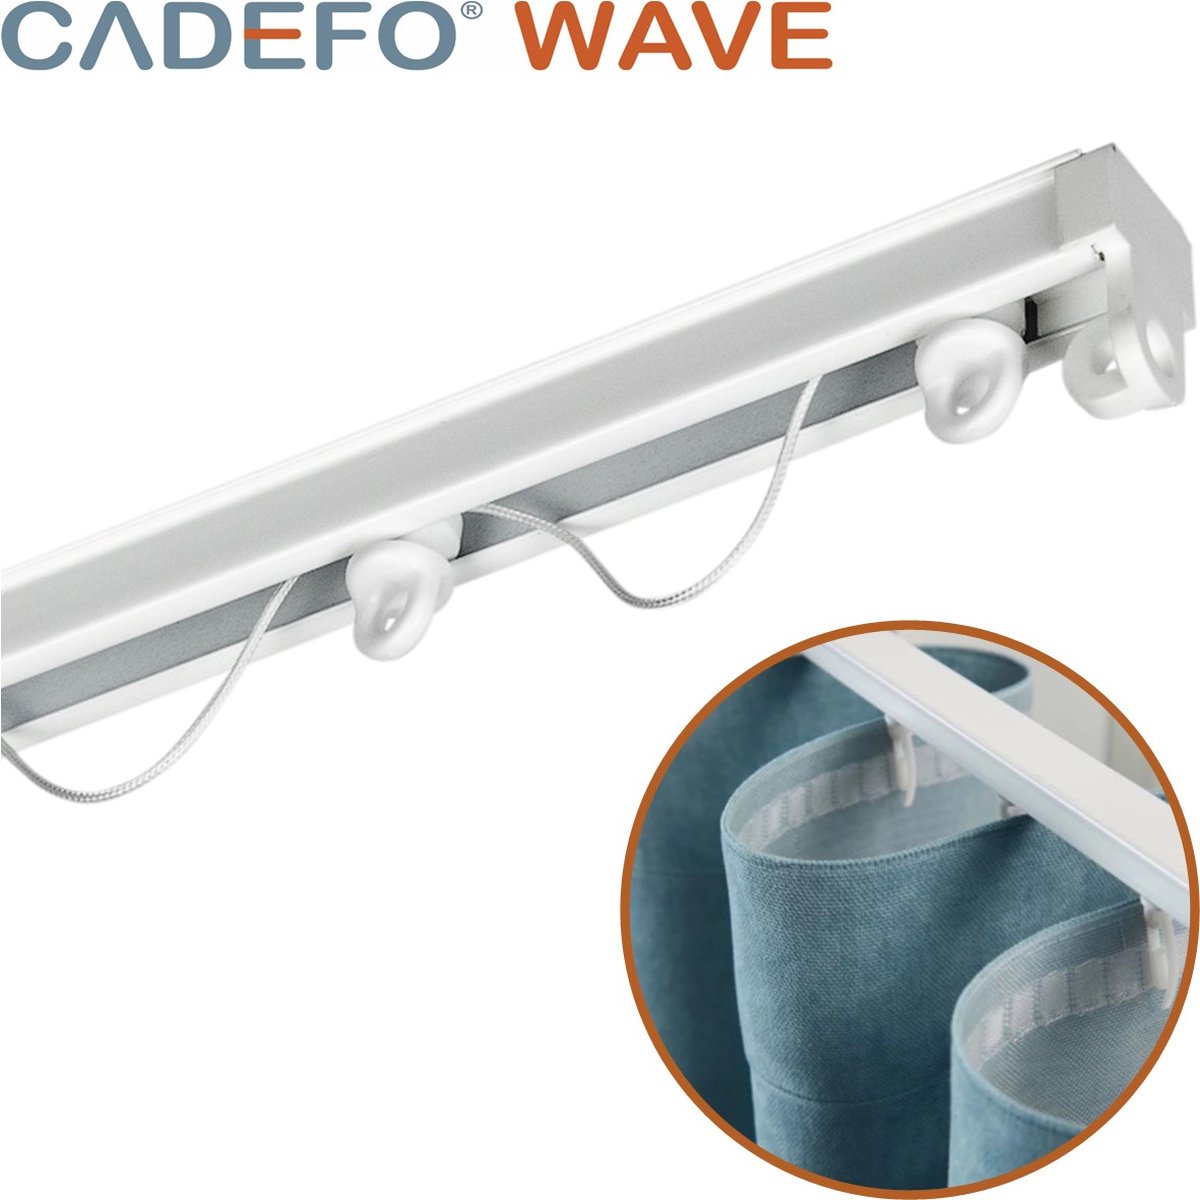 CADEFO WAVE (501 - 550 cm) Gordijnrails - Compleet op maat! - UIT 1 STUK - Leverbaar tot 6 meter - Plafondbevestiging - Lengte 537 cm